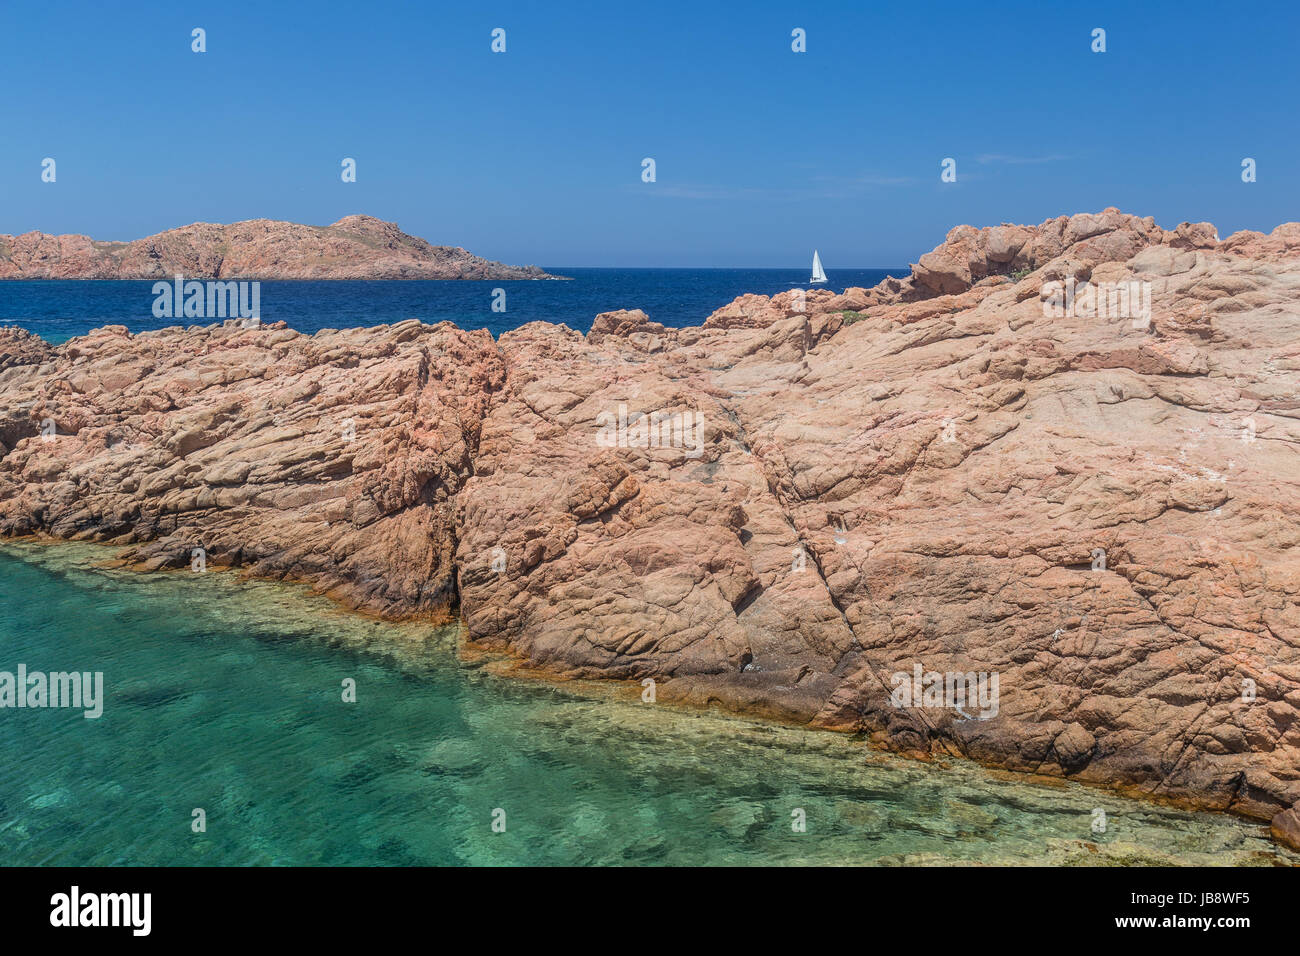 Isola Rossa (isola rossa) è un bel villaggio che si affaccia sul golfo dell'Asinara. Il suo nome deriva dal piccolo rocciosa isola rossa situato in fro Foto Stock